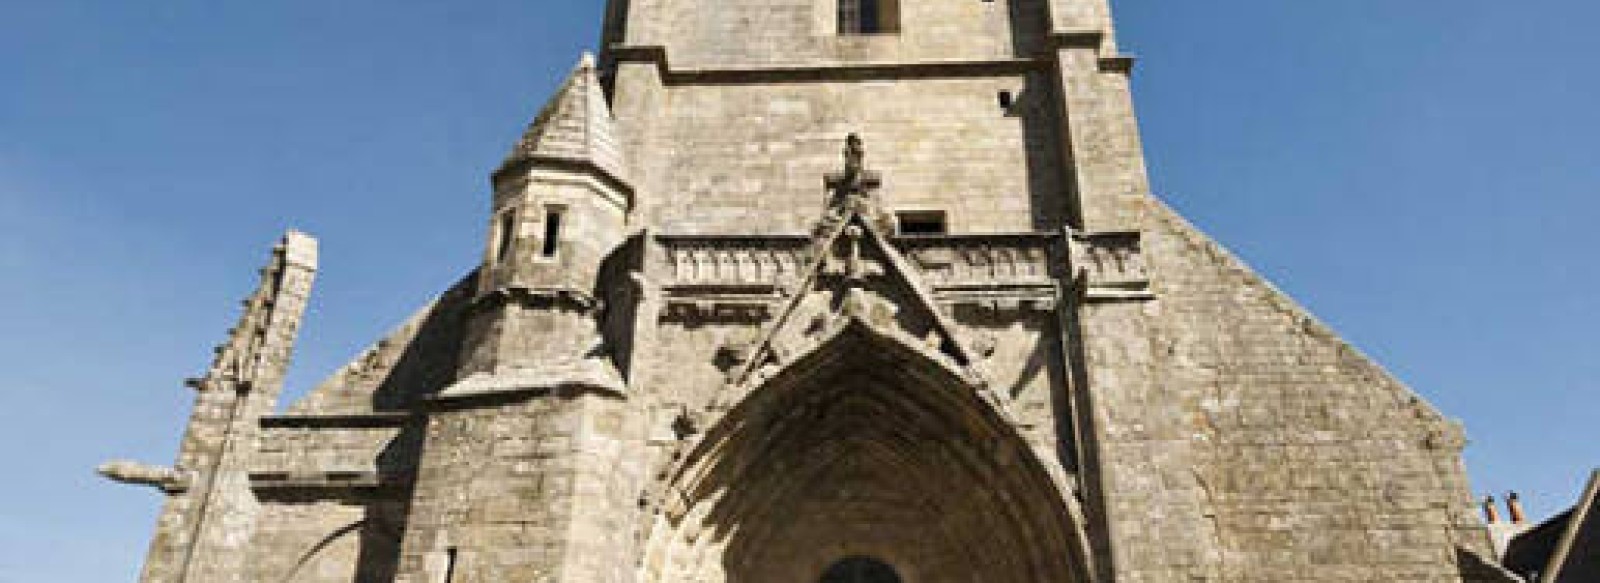 Tour Saint-Guenole